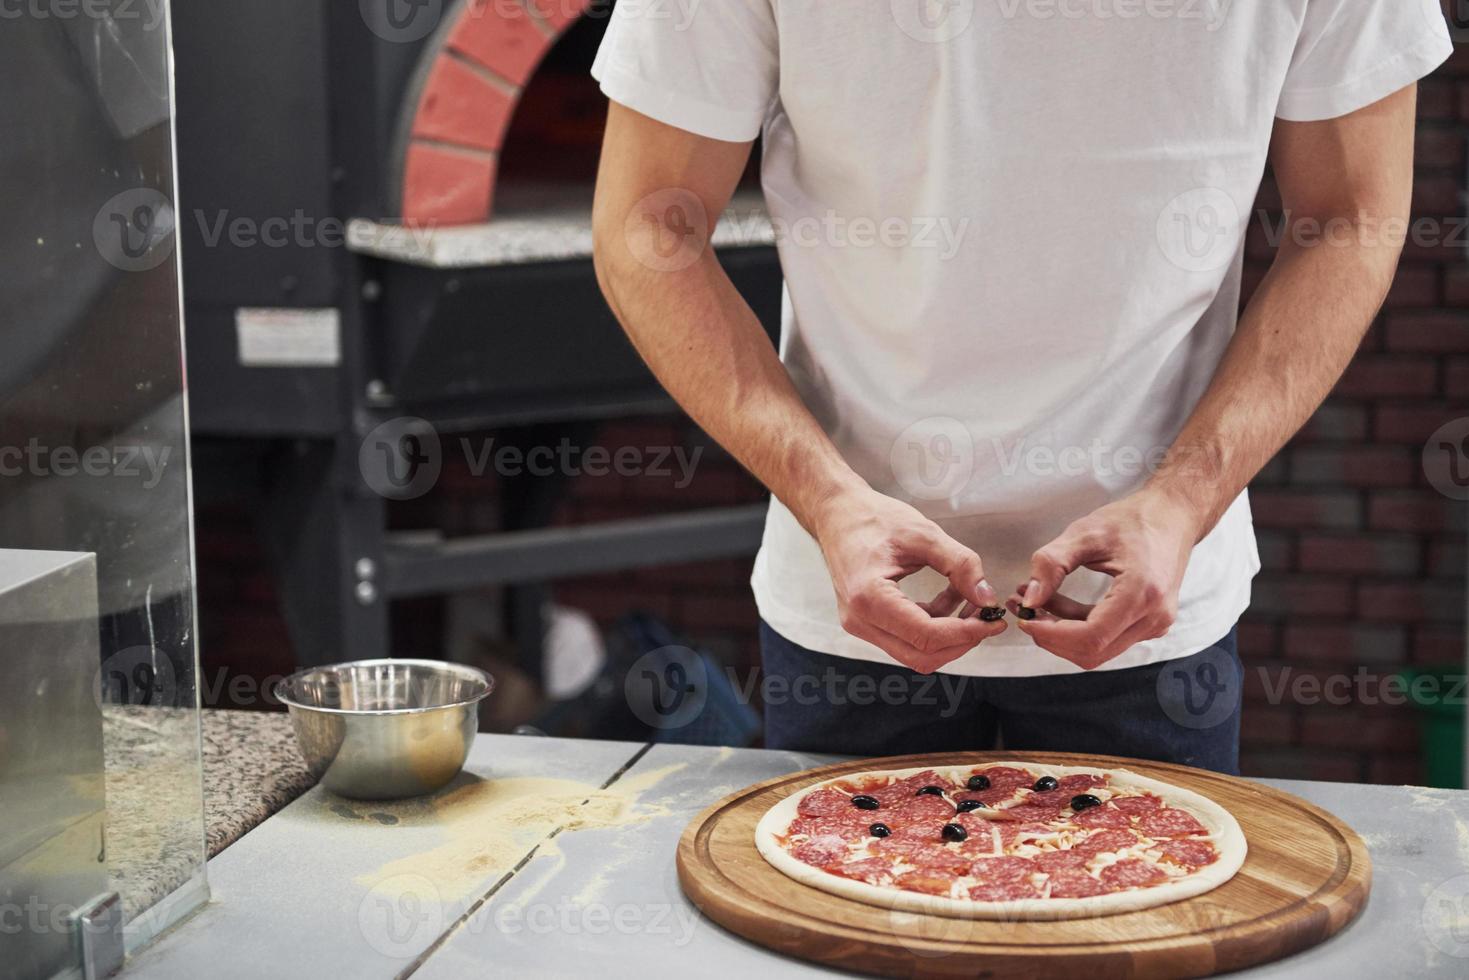 köstliches Produkt herstellen. Bäcker im weißen Hemd, der Oliven legt, um köstliche Pizza für eine Bestellung im Restaurant zuzubereiten foto